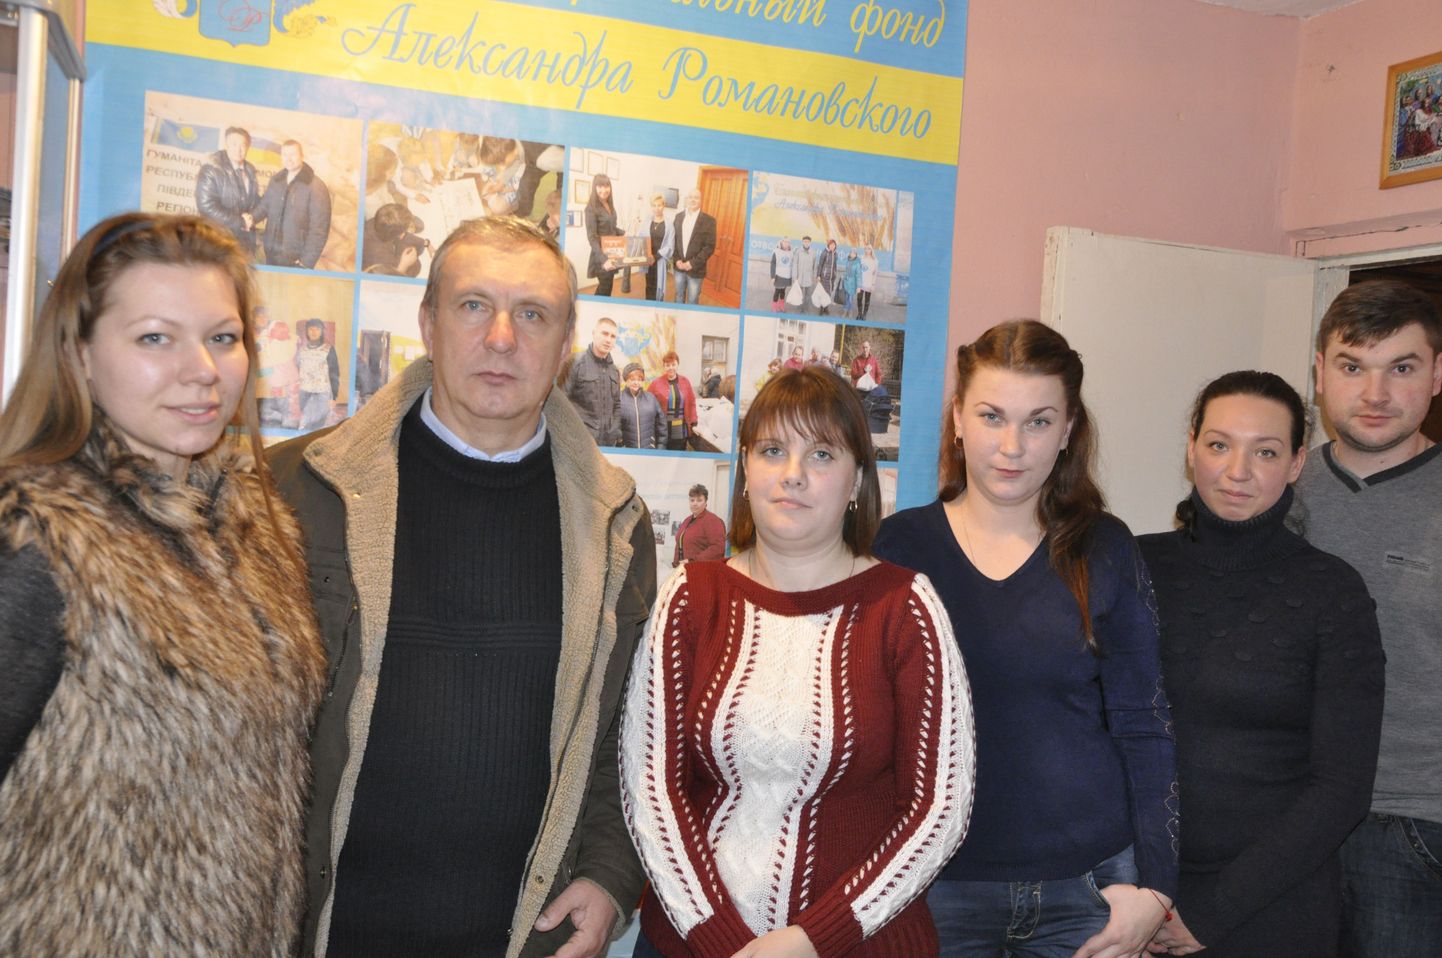 Noored emad ja kohalikud aktivistid: Julia Nikišina (vasakult kolmas), Natalja Šehovtsova (vasakult neljas) ja Viktoria Nikotina (vasakult viies). Vasakult esimesed kaks on samuti aktiivsed kohalikud vabatahtlikud Anastassija Tsepljajeva ja Mihhail Jarošenko.